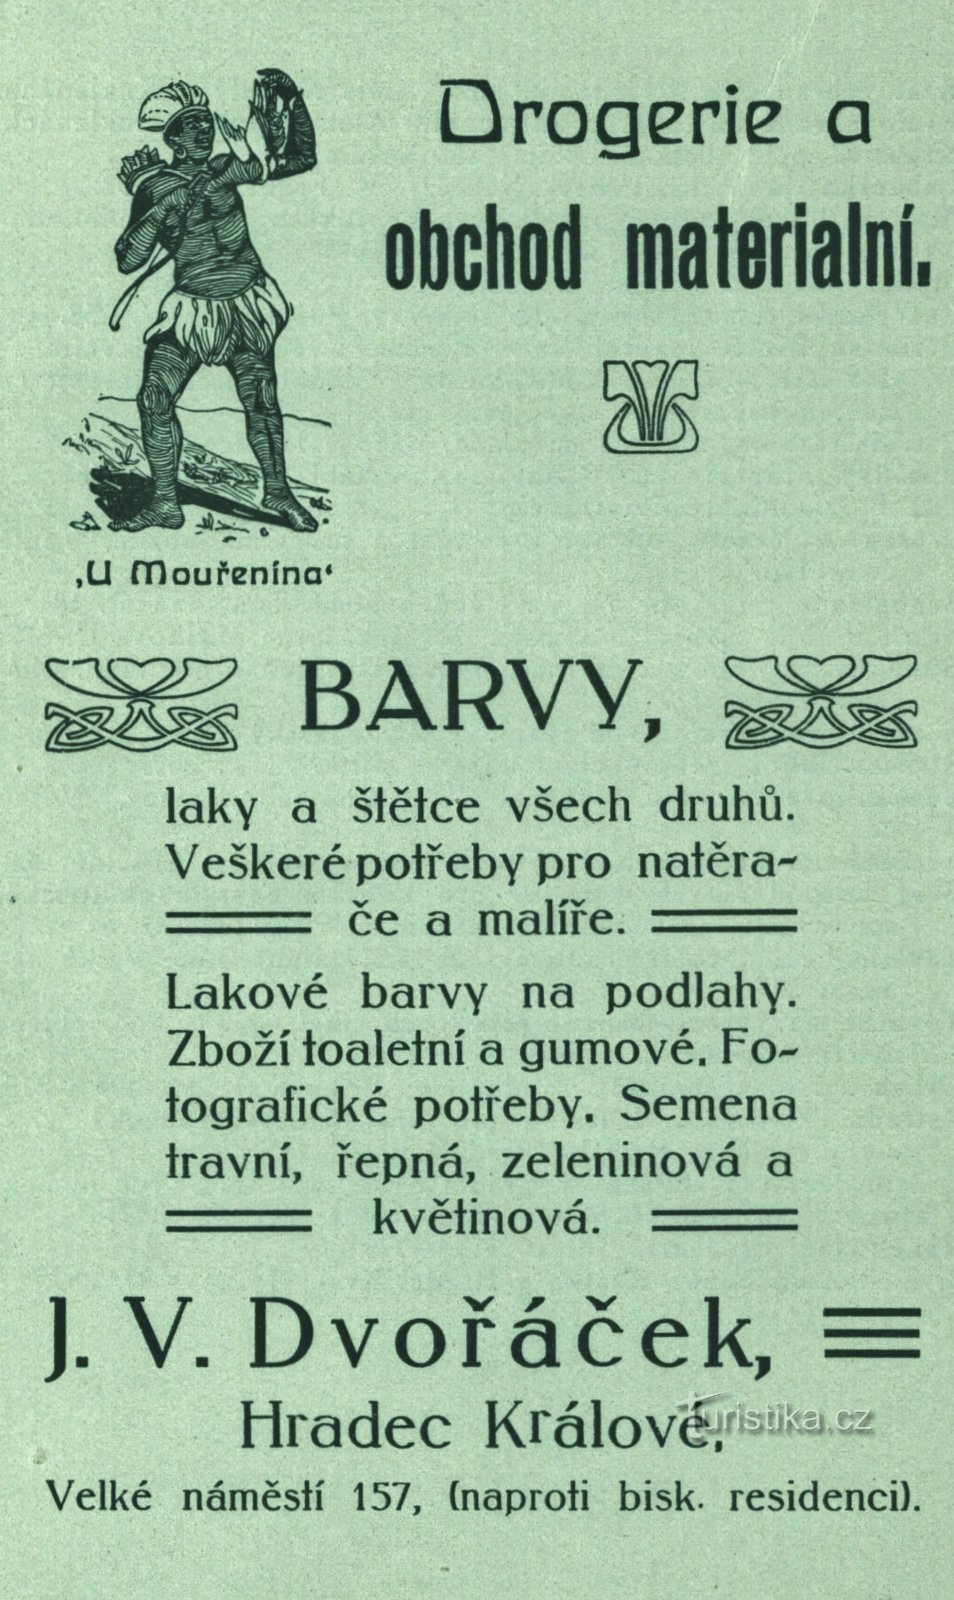 Časovni oglas Dvořáčkove drogerije iz leta 1896